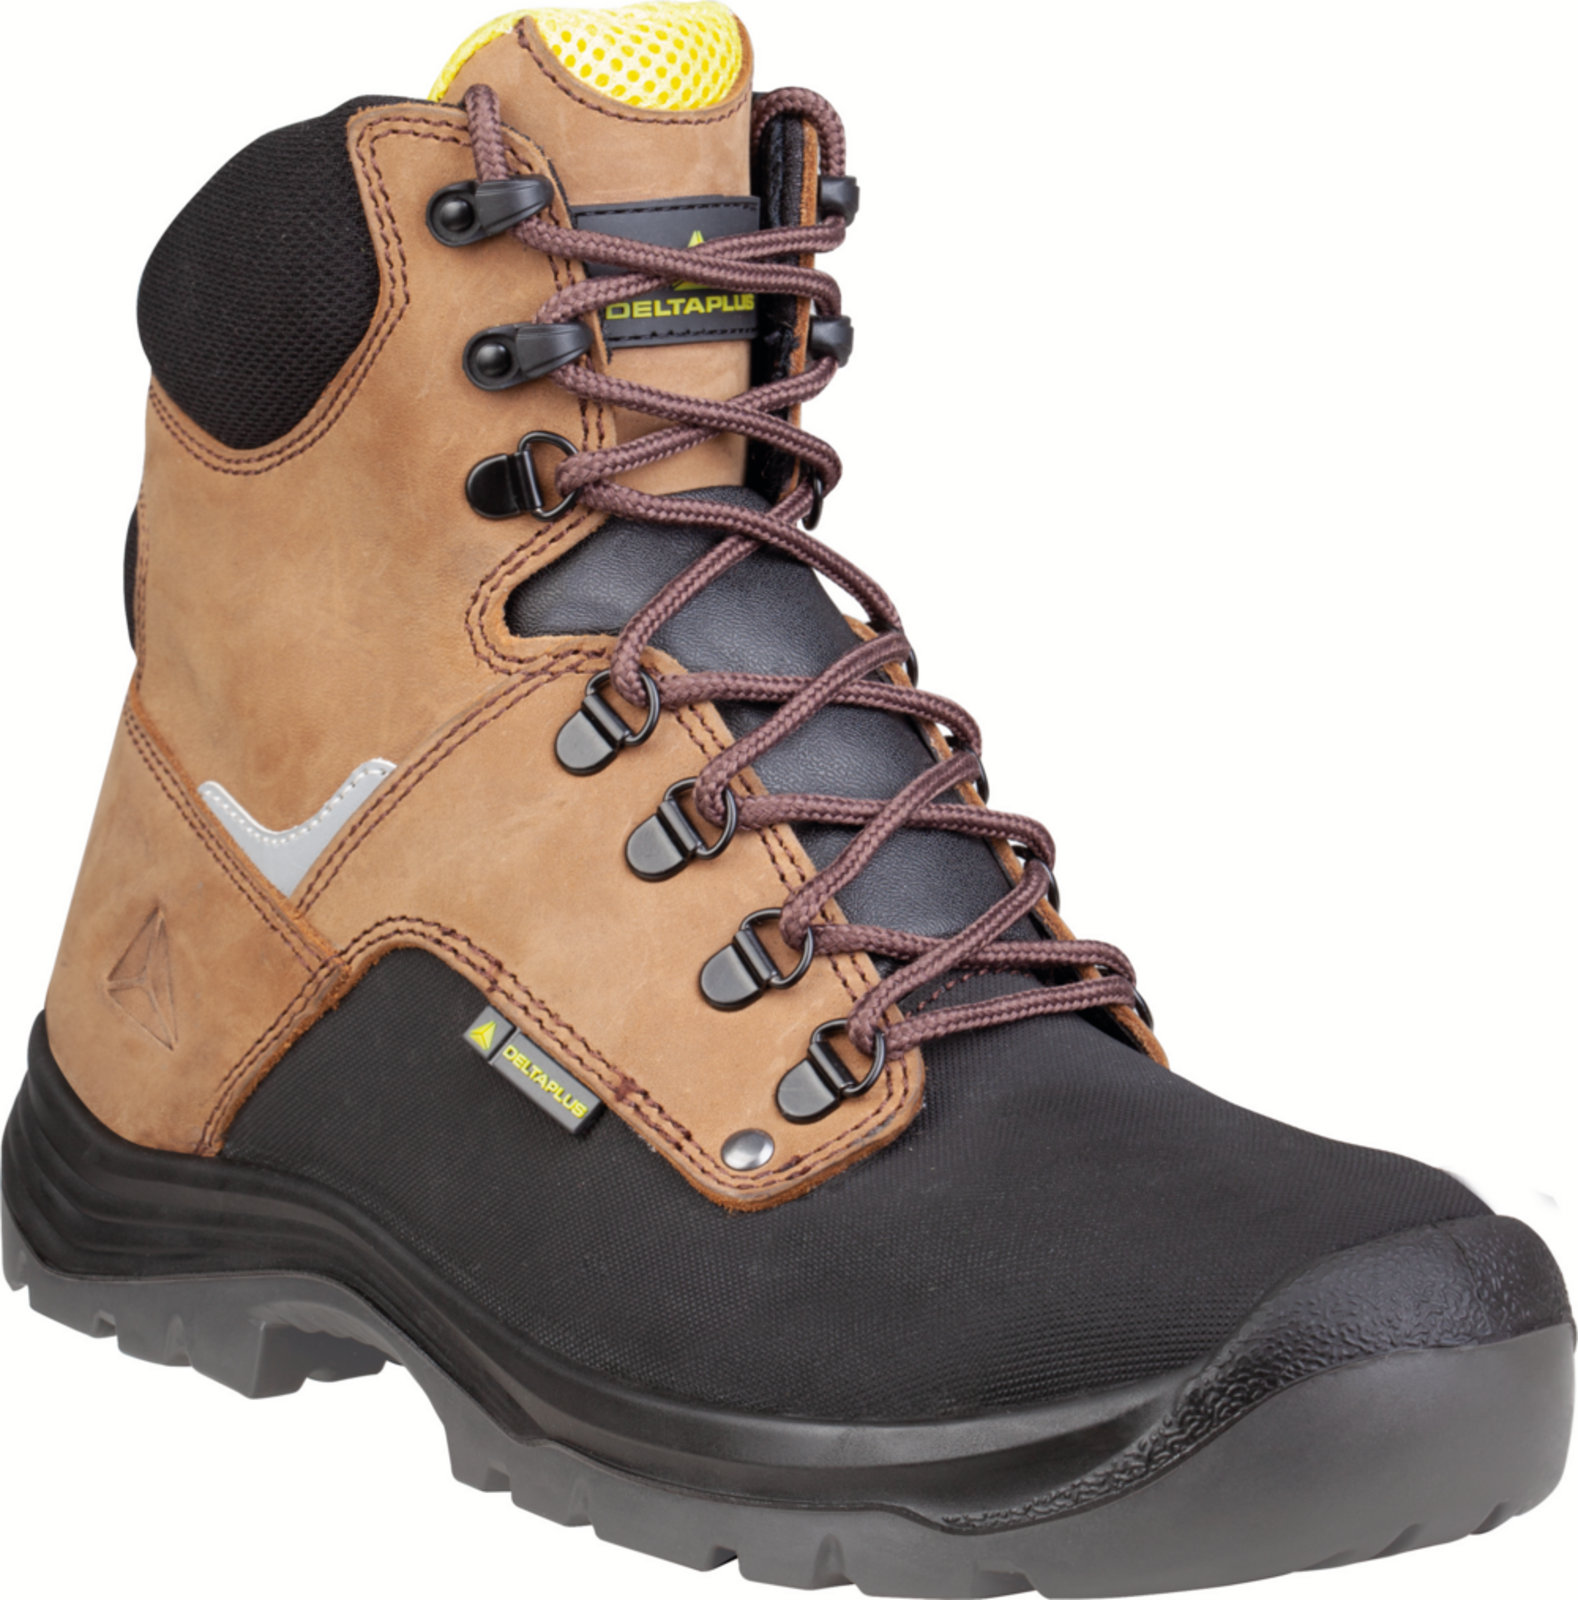 Vysoká bezpečnostná obuv Delta Plus Atacama S3 - veľkosť: 37, farba: hnedá/čierna